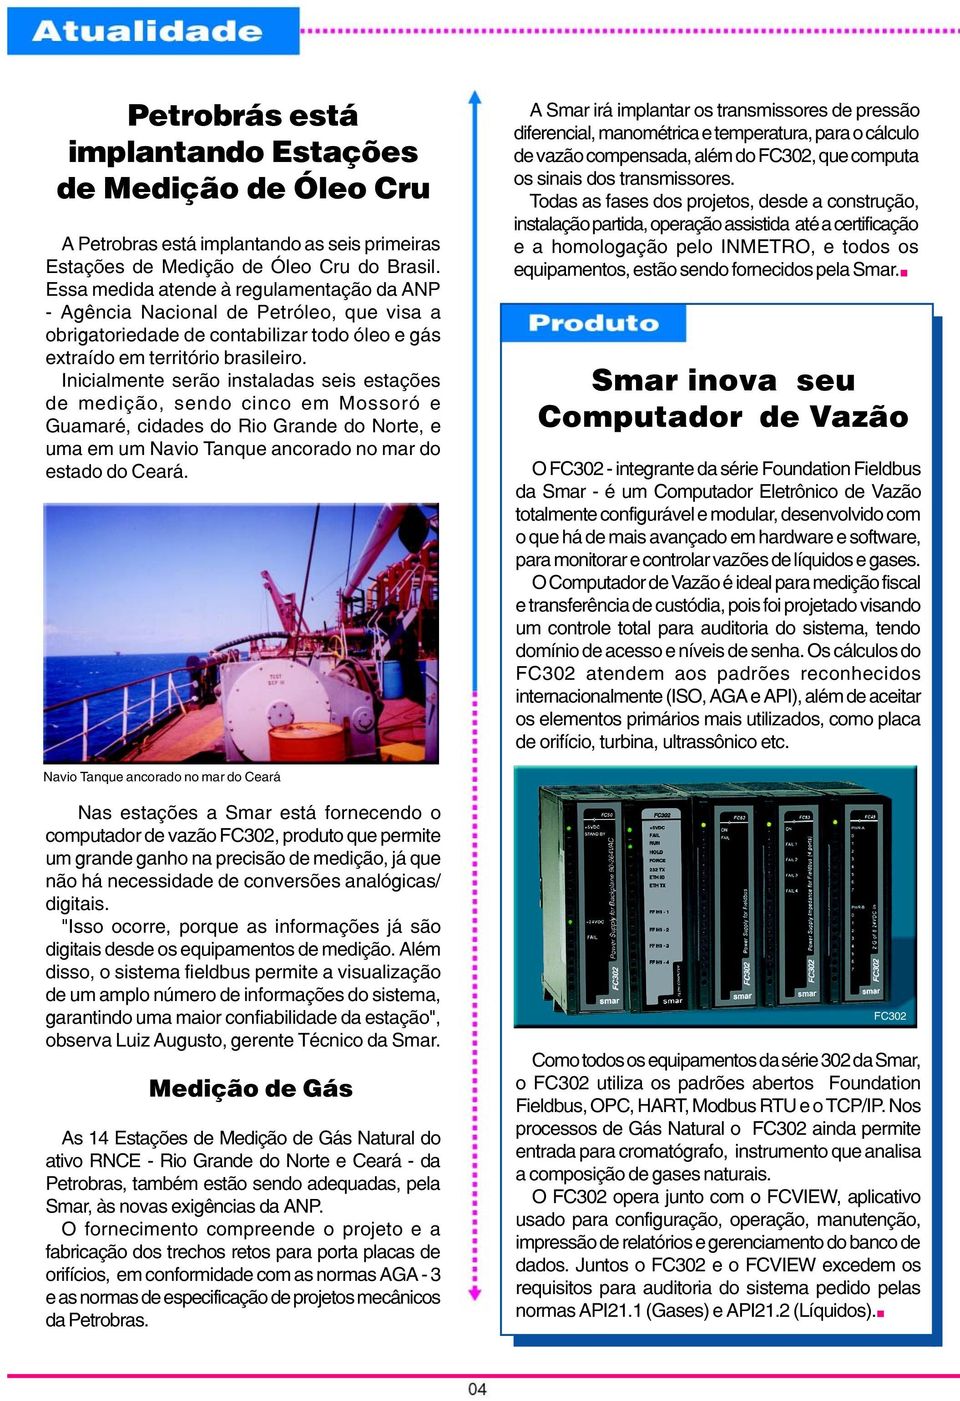 Inicialmente serão instaladas seis estações de medição, sendo cinco em Mossoró e Guamaré, cidades do Rio Grande do Norte, e uma em um Navio Tanque ancorado no mar do estado do Ceará.